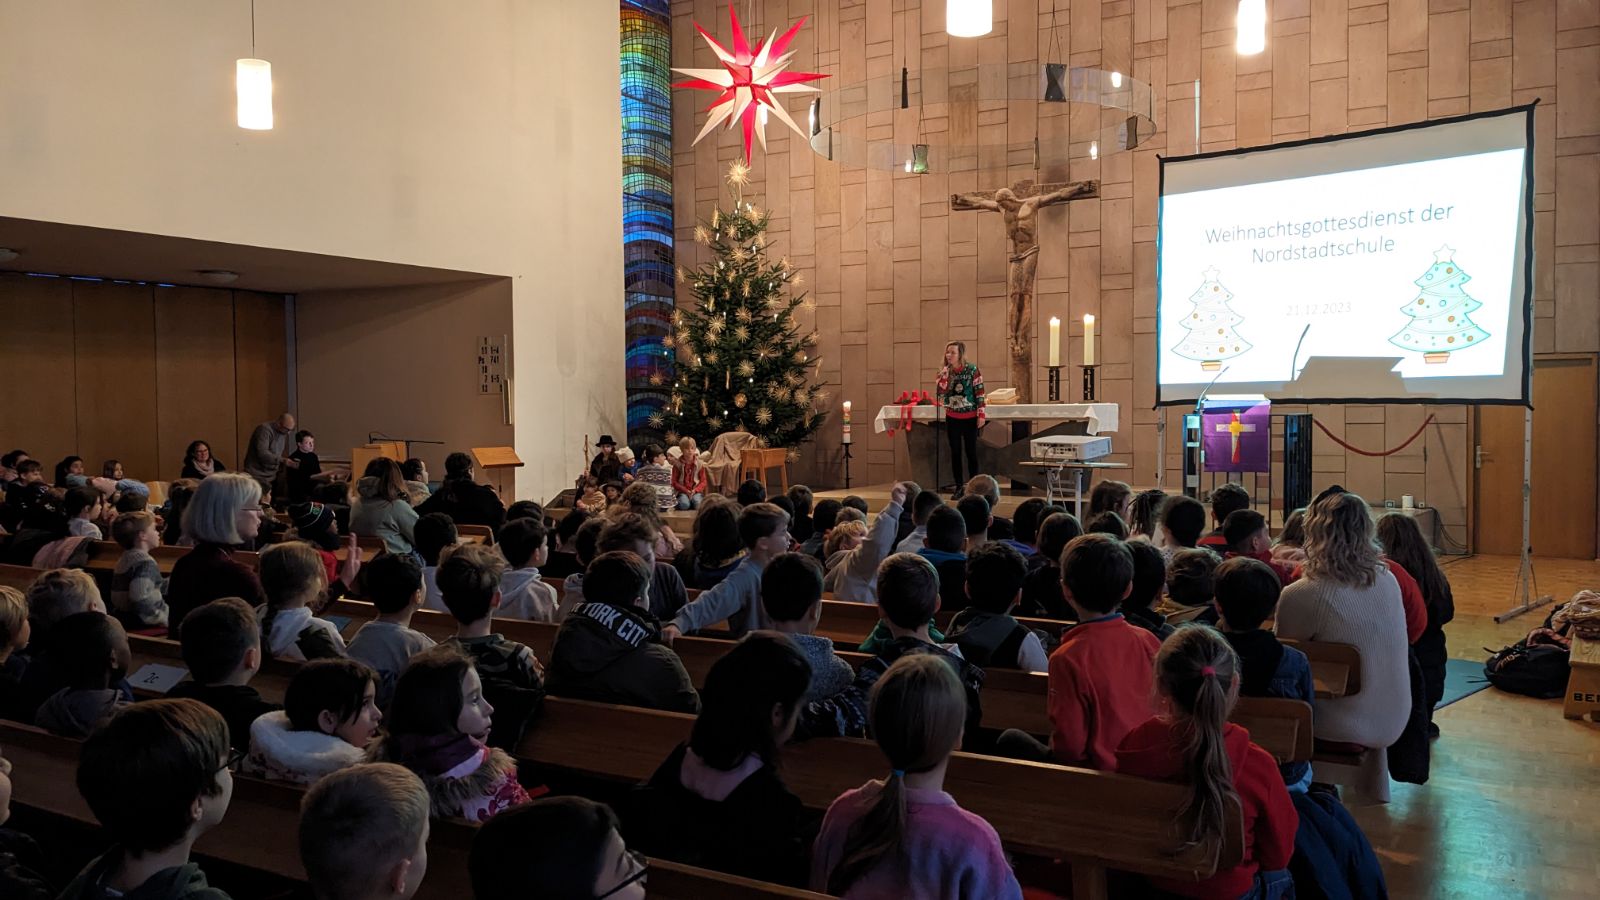 Man sieht Schüler in der Kirche beim Weihnachtsgottesdienst